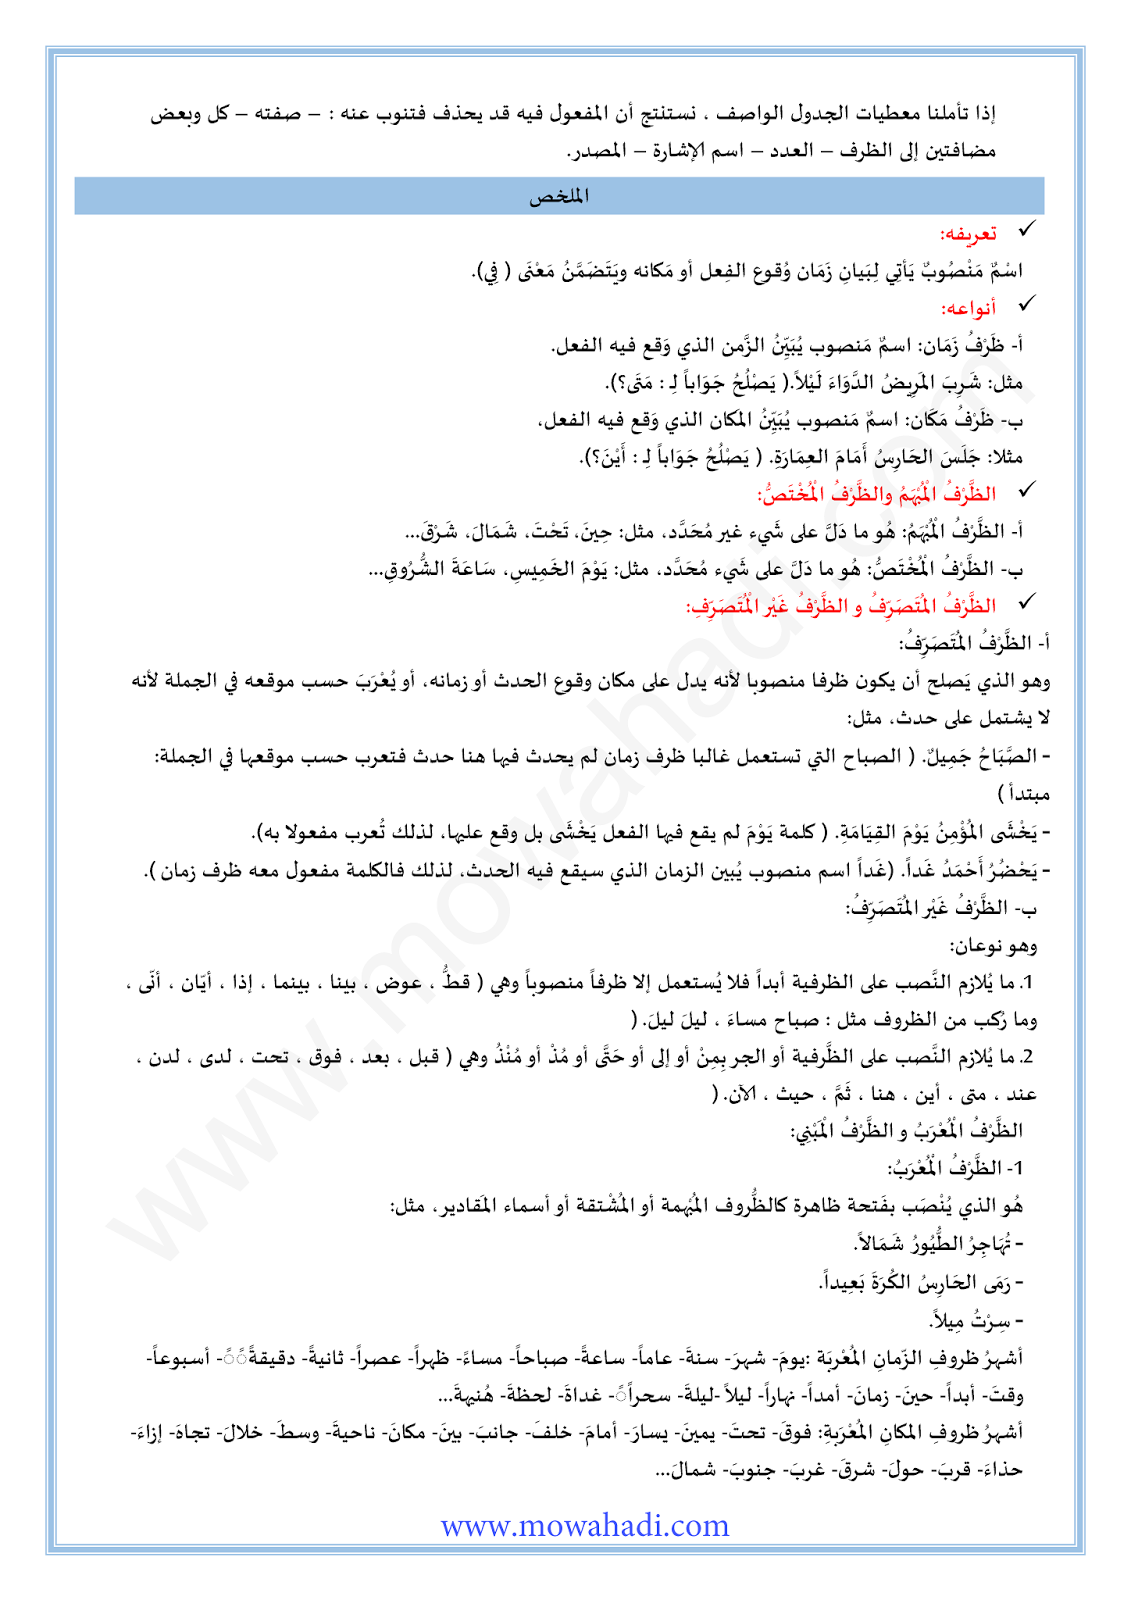 الدرس اللغوي المفعول فيه للسنة الثانية اعدادي في مادة اللغة العربية 8-cours-loghawi2_002